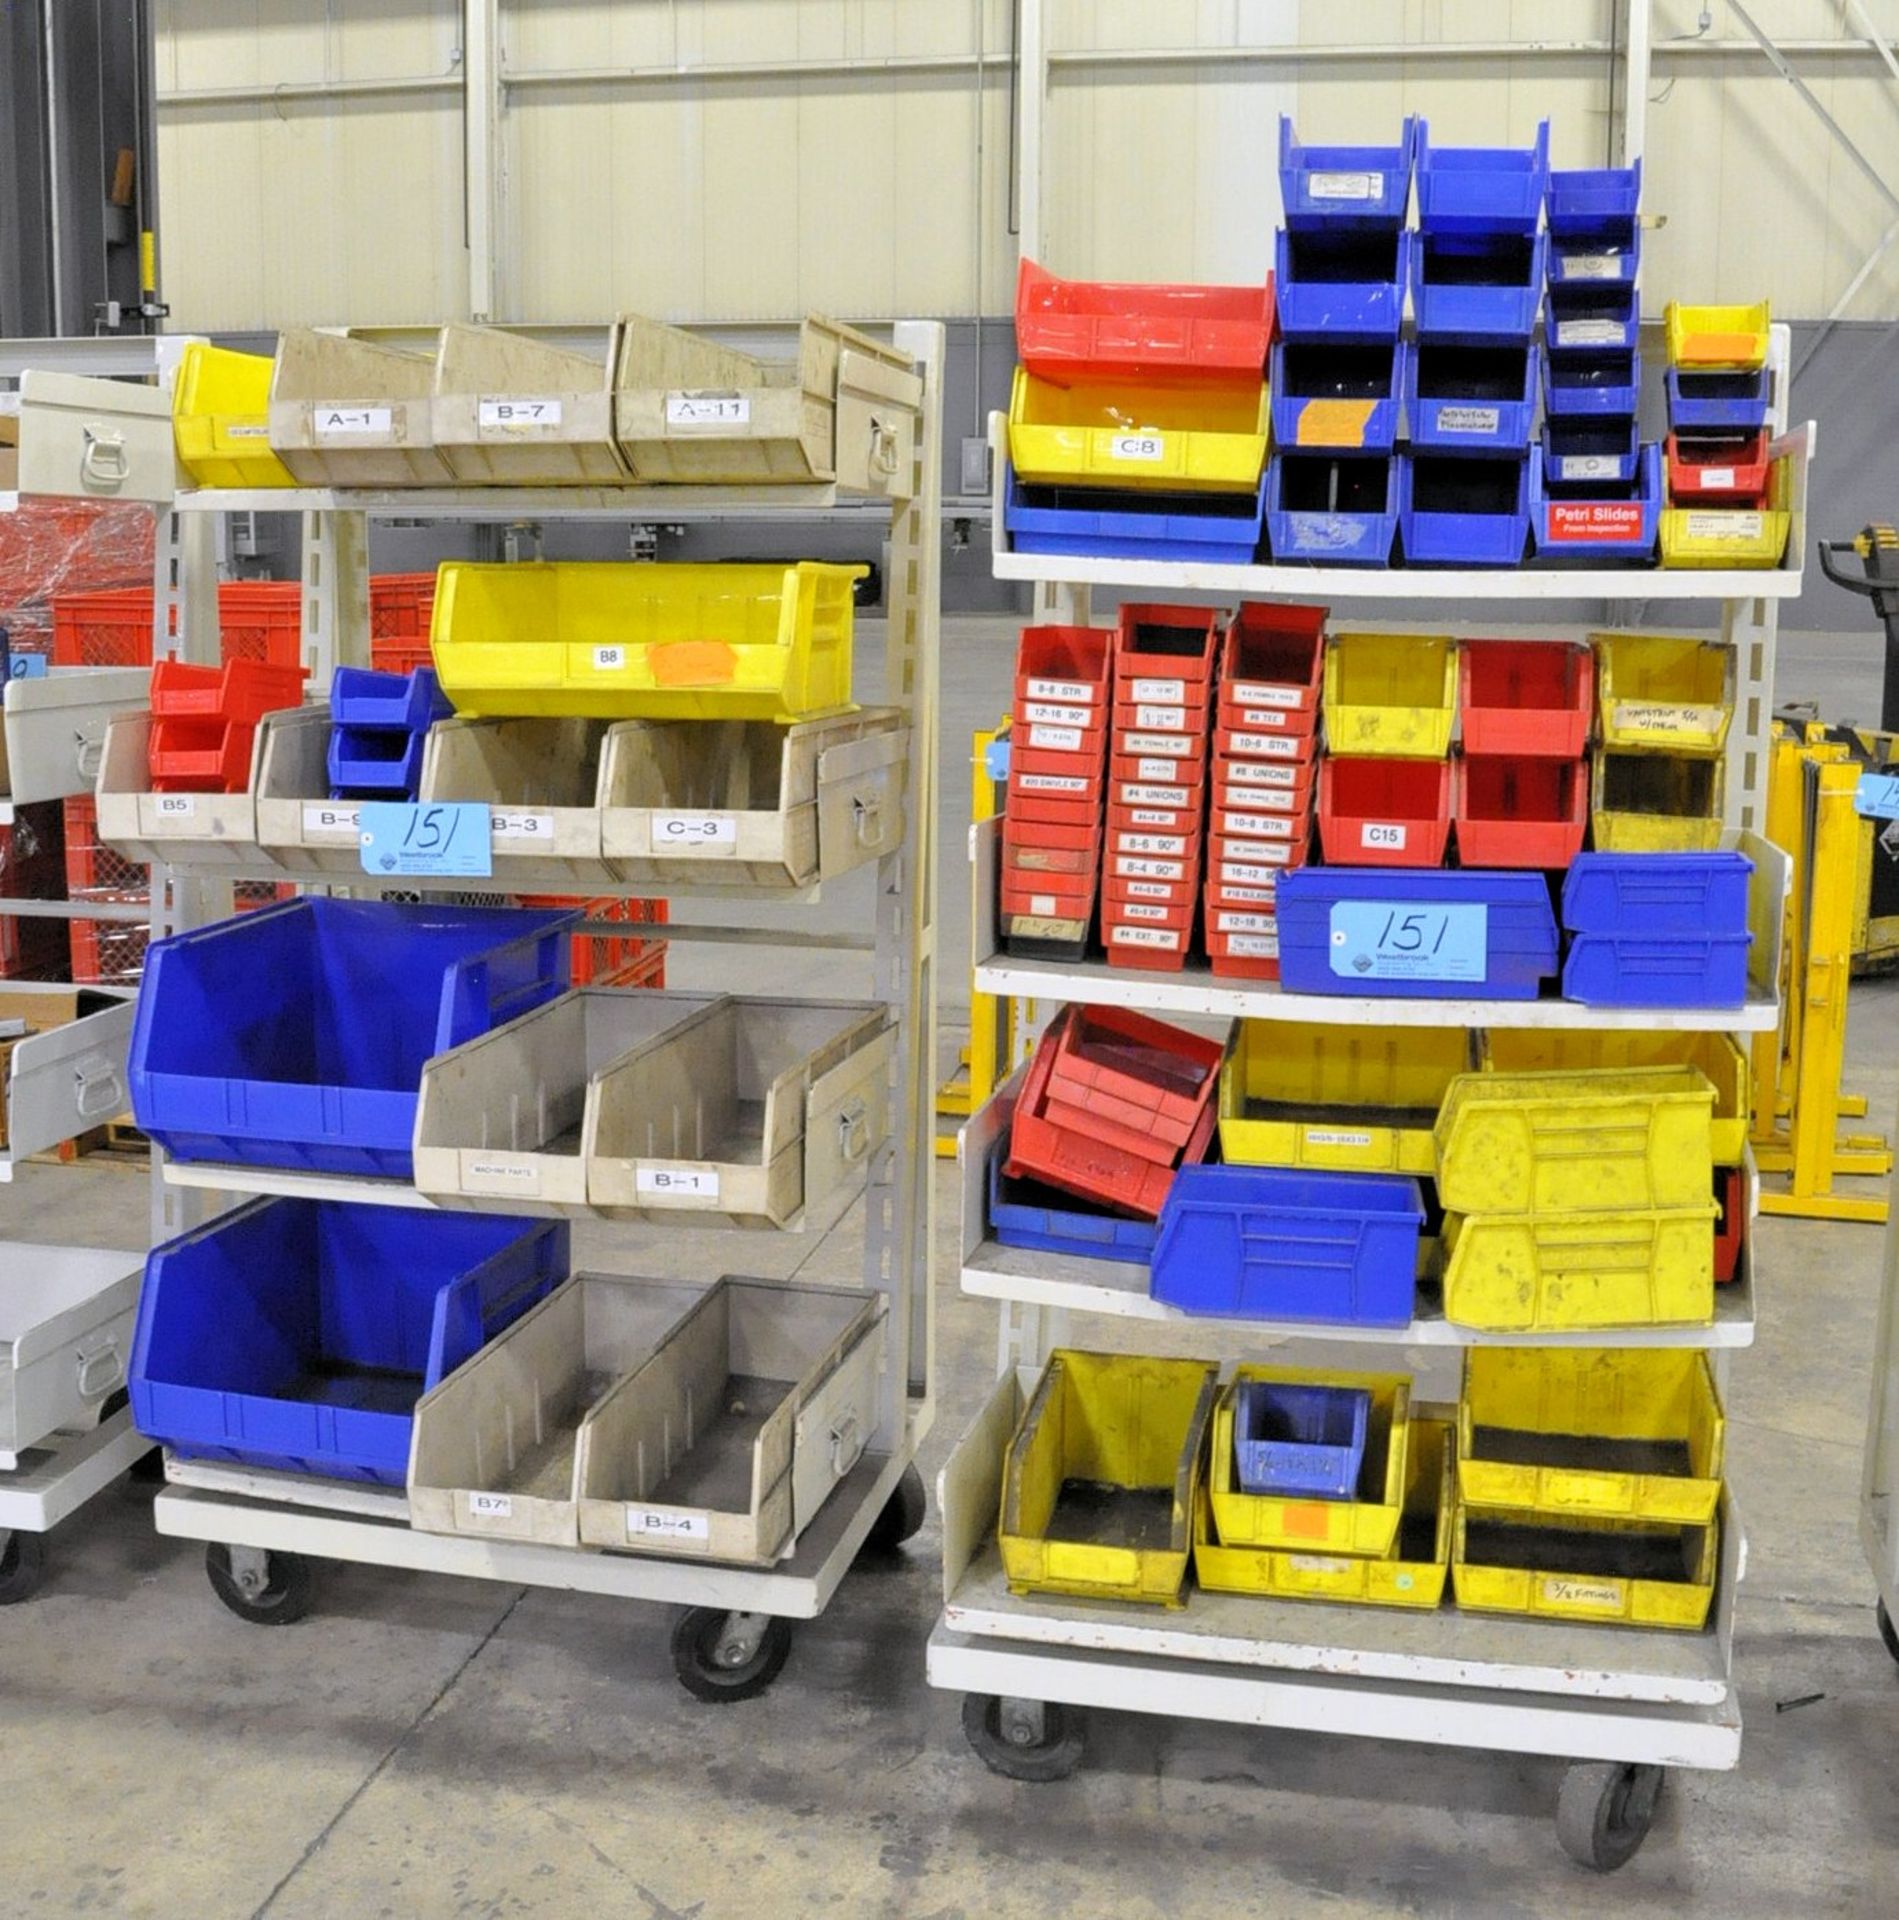 Lot-Empty Plastic Parts Bins on (2) Shelving Carts, (Carts Not